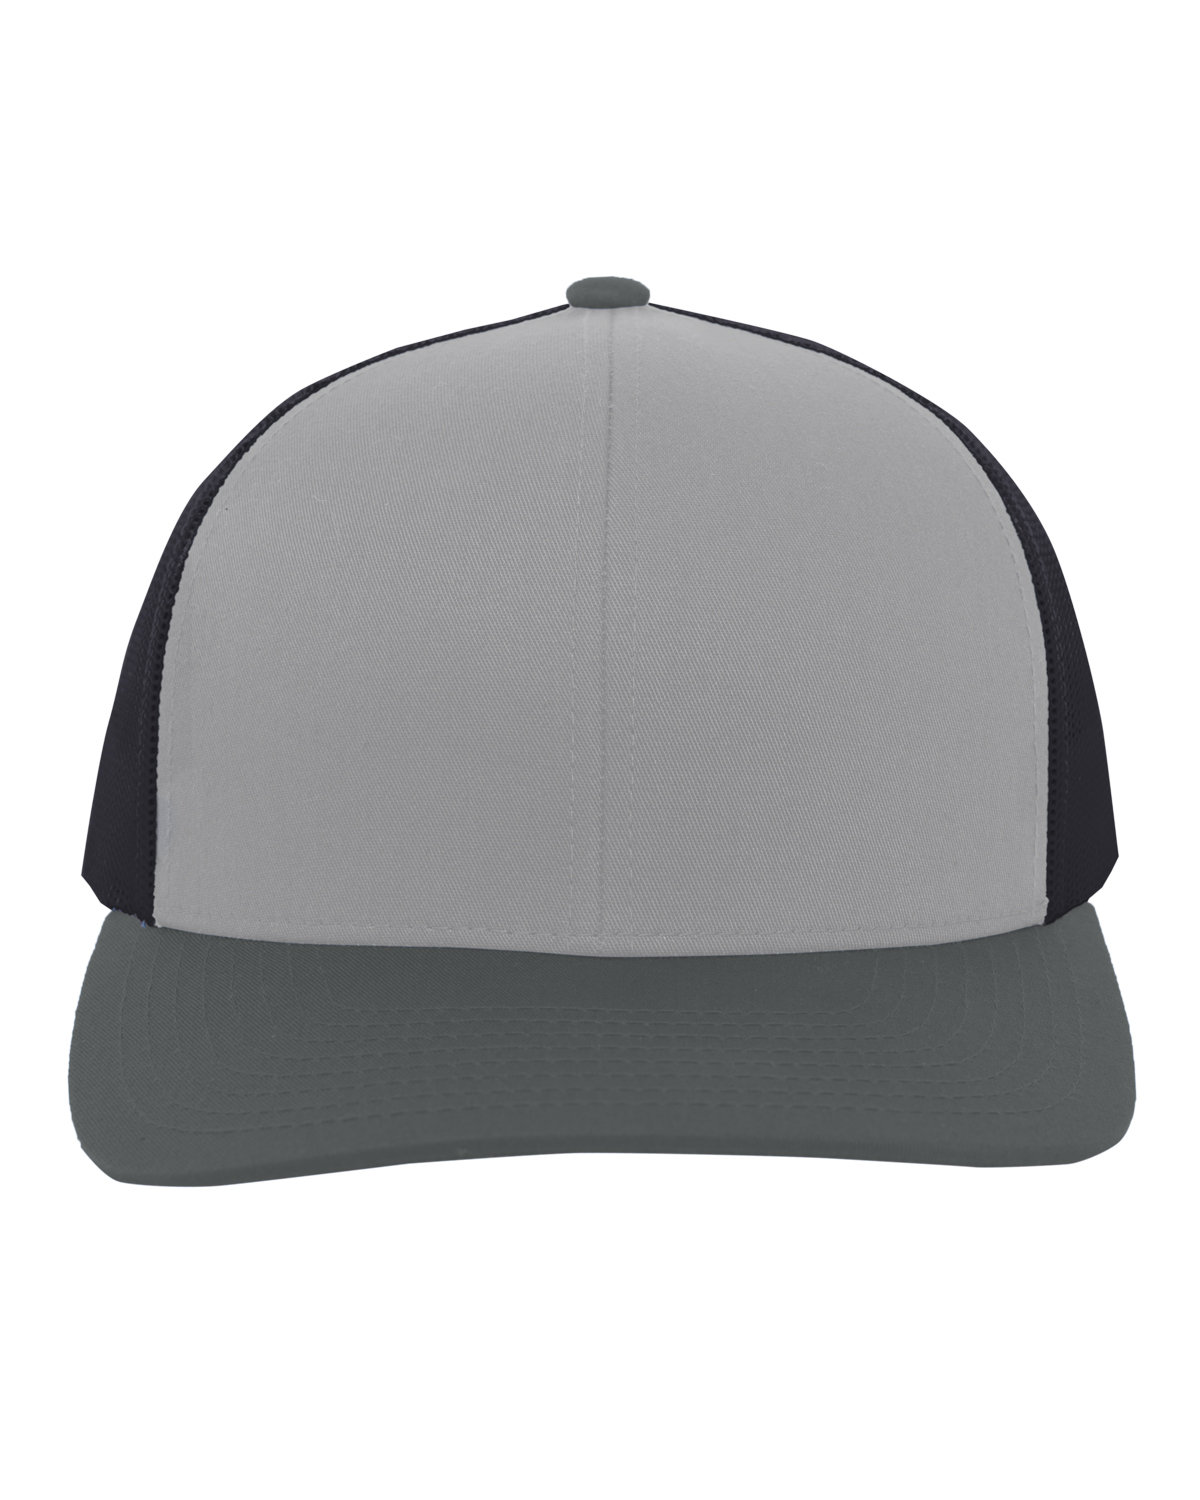 Pacific Headwear Trucker Snapback Hat HT GR/ LT C/ L C 